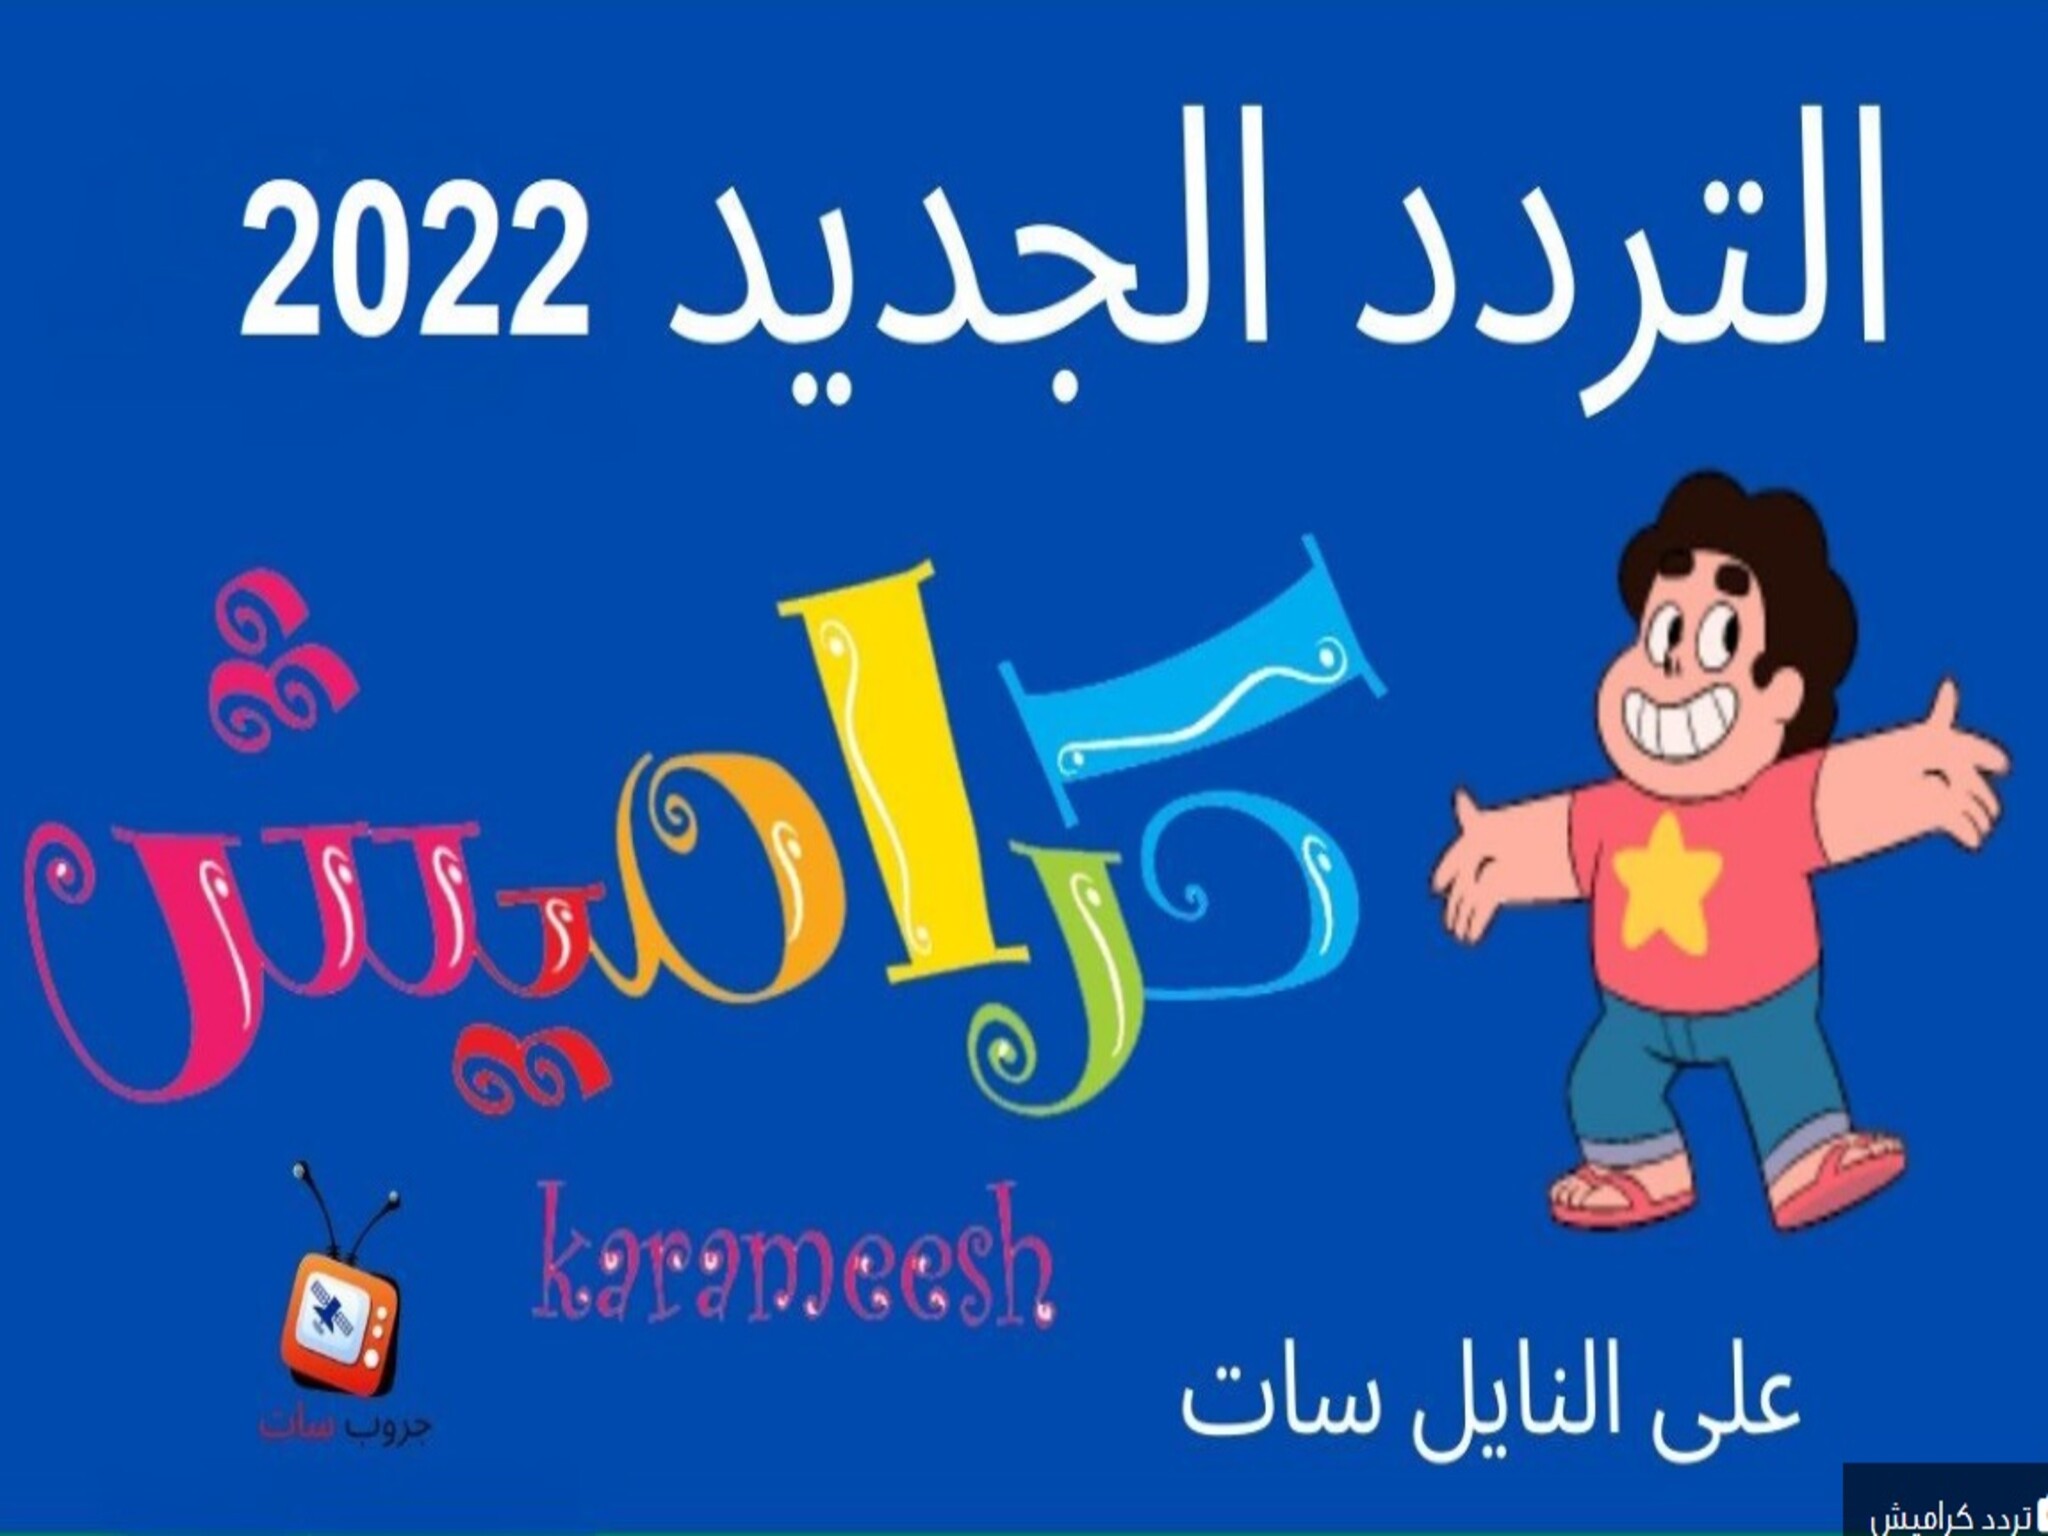 تردد قناة كراميش 2023 الجديد علي النايل سات وعربسات Karameesh TV قنوات كرتون